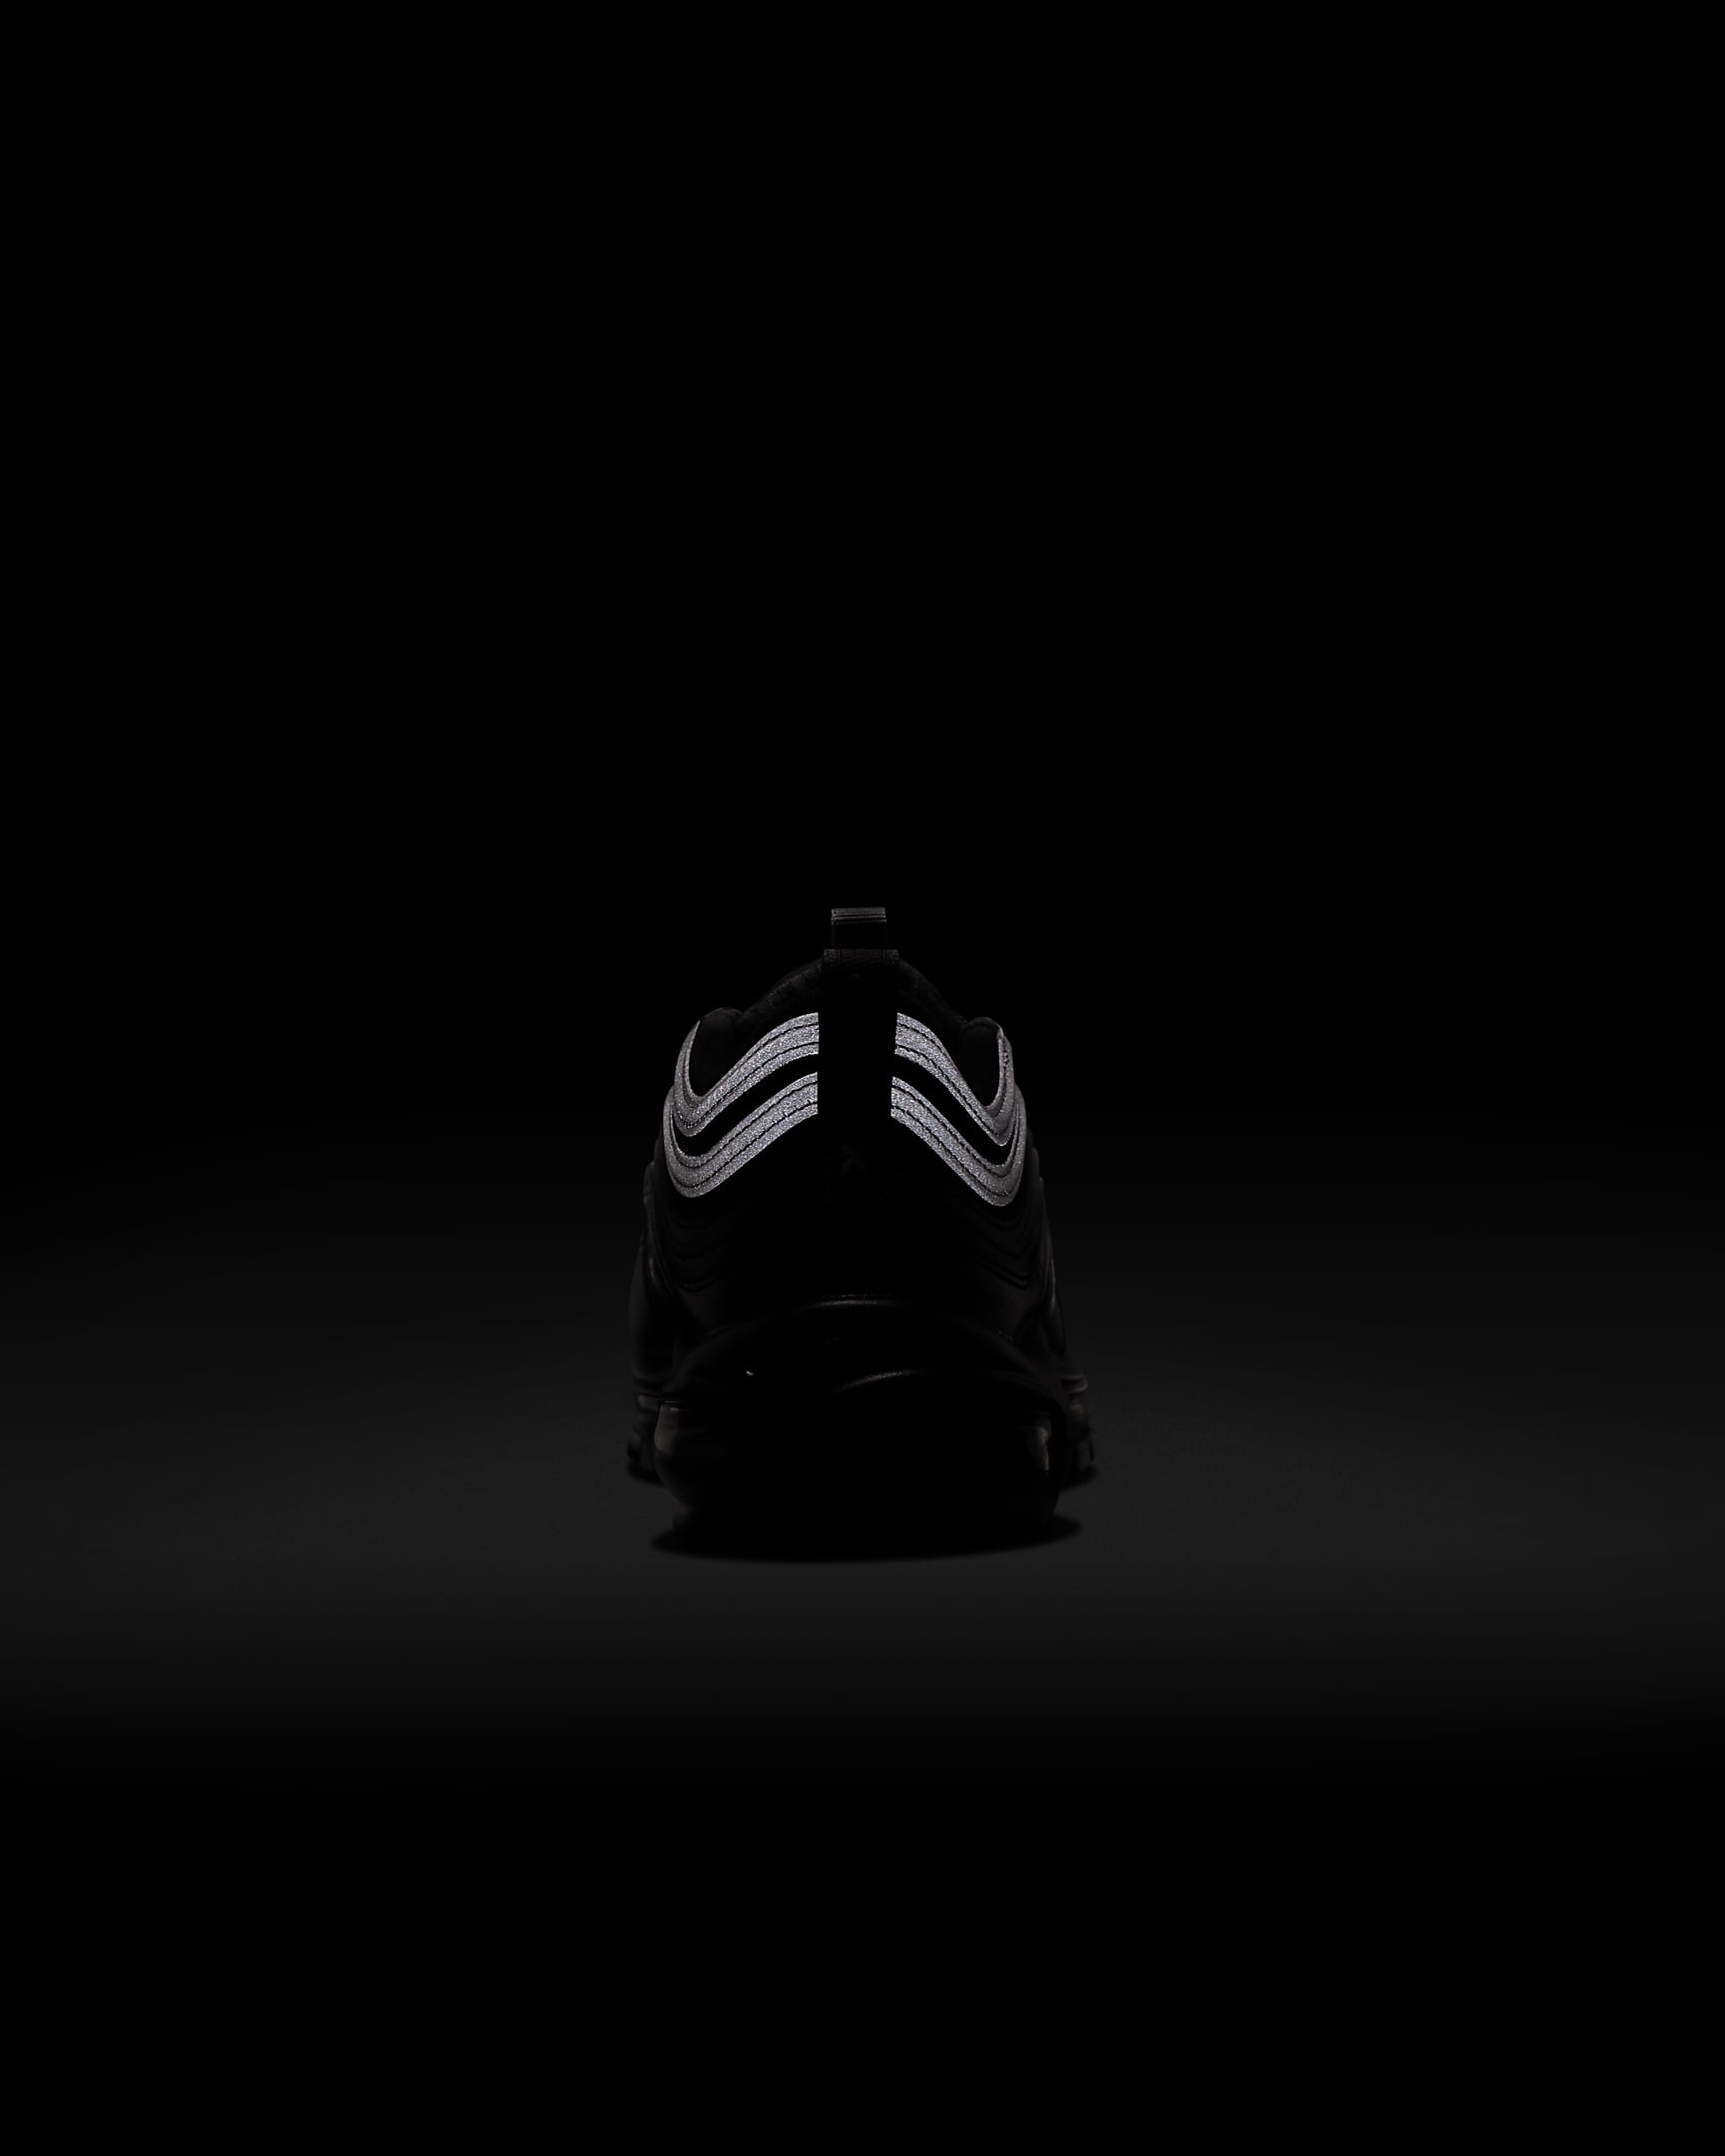 Chaussure Nike Air Max 97 pour ado - Noir/Anthracite/Blanc